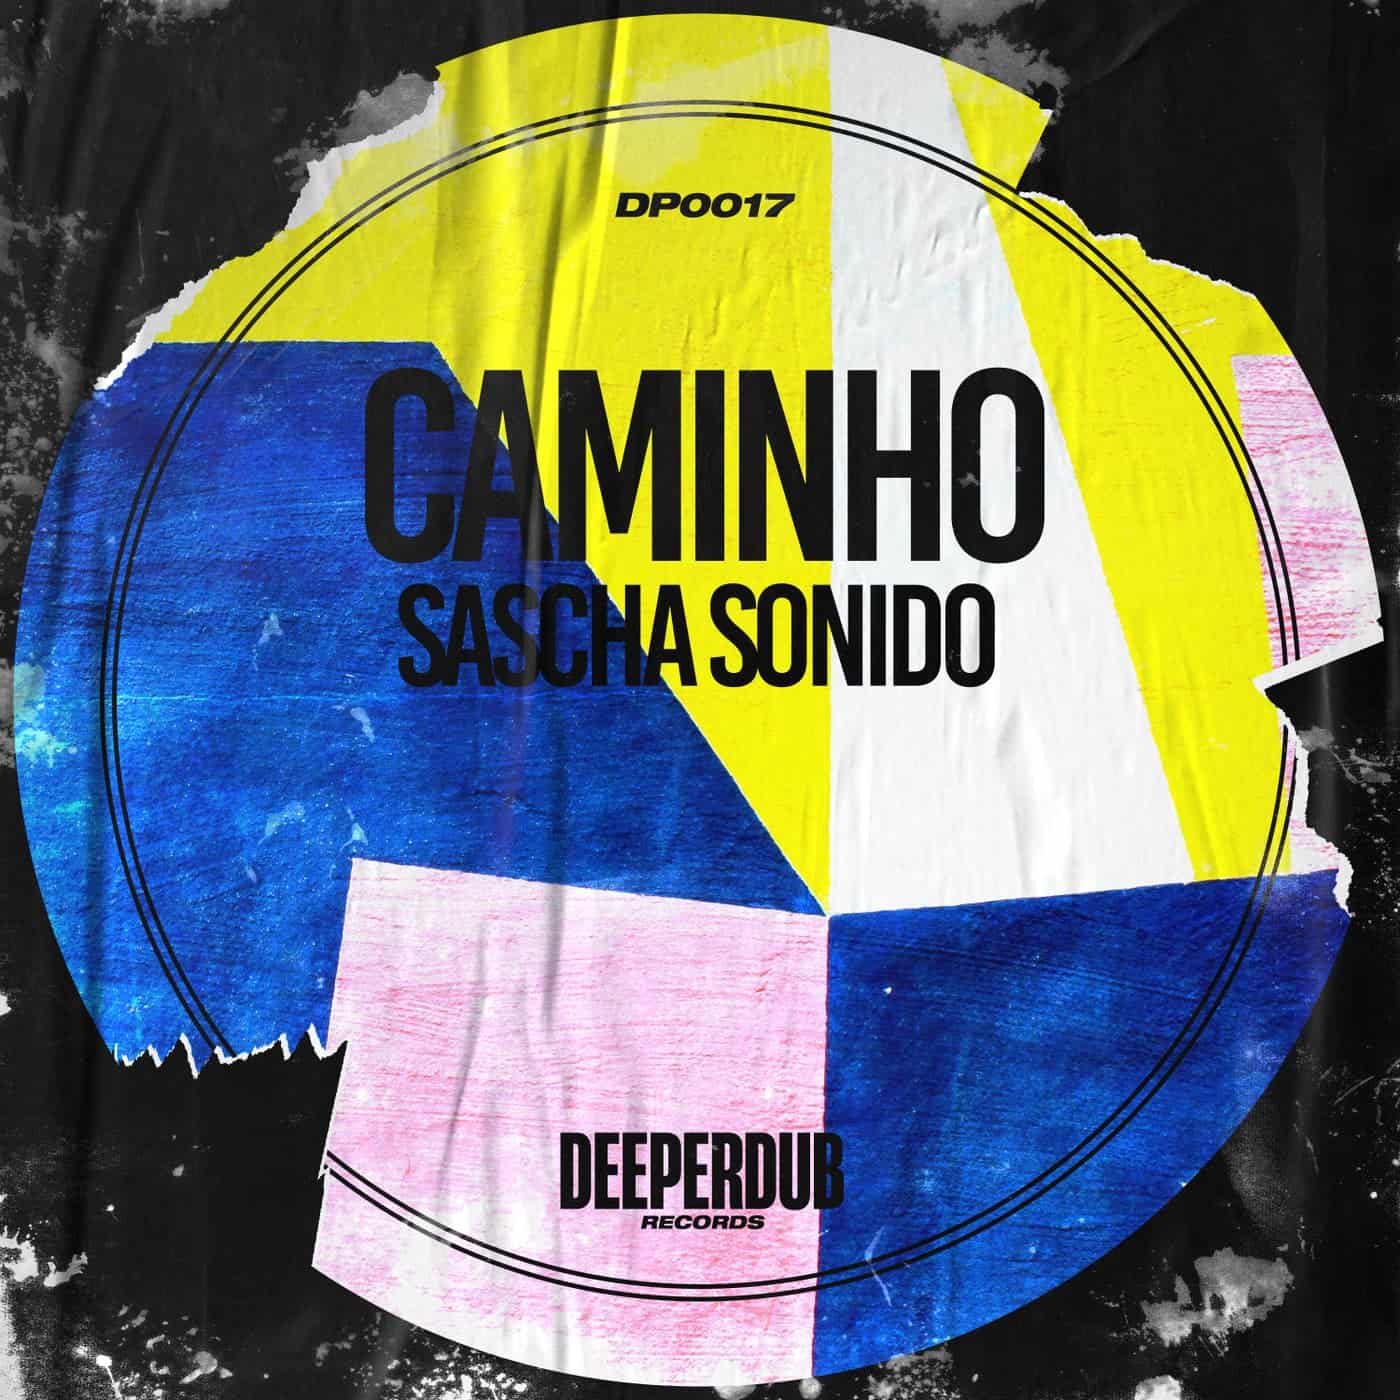 image cover: Sascha Sonido - Caminho / DP00017